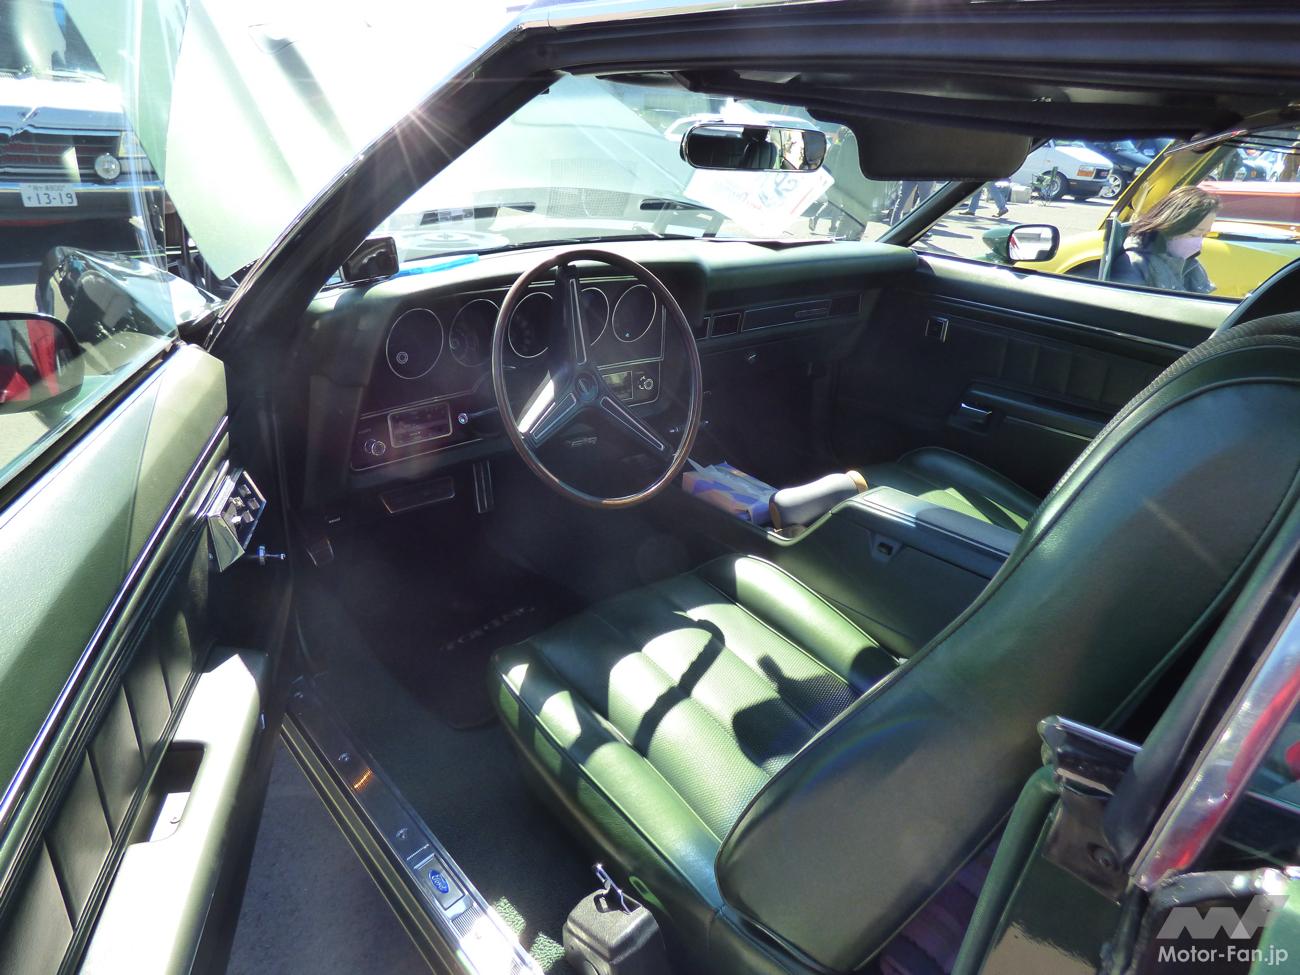 「クリント・イーストウッドの名作映画『グラン・トリノ』から飛び出したフォード・グラントリノは希少な7.0L V8エンジン搭載の1972年型正規輸入車!?」の8枚めの画像